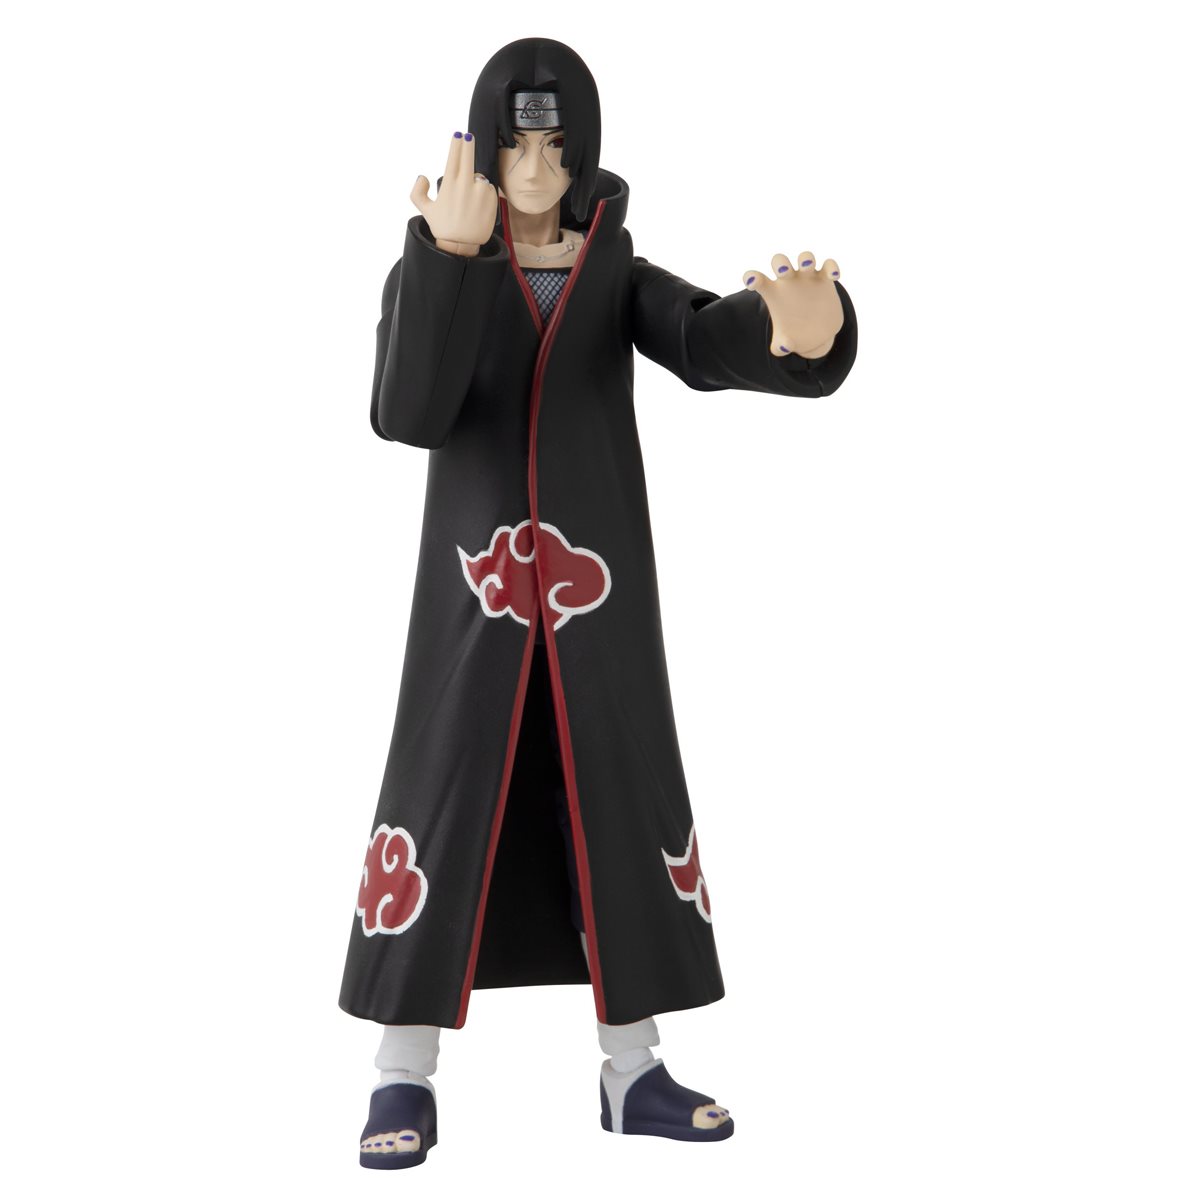 Anime Heroes Naruto Shippuden Action Figure Uchiha Itachi *BRAND NEW*